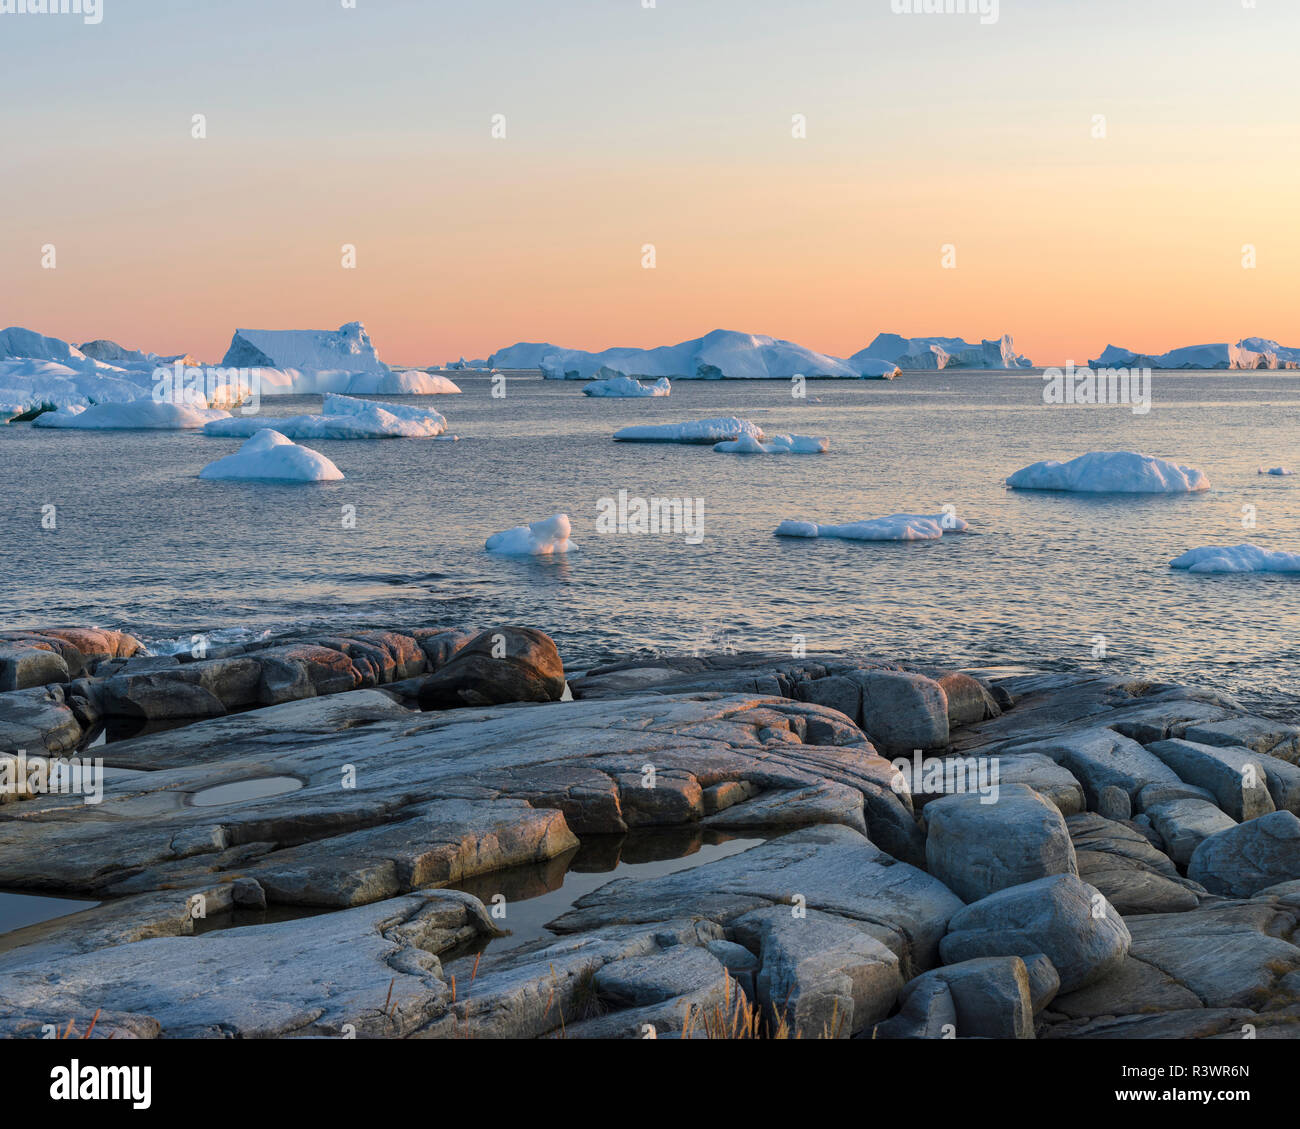 Paysage côtier avec des icebergs. Oqaatsut village Inuit (autrefois appelé Rodebay) situé dans la baie de Disko. Le Groenland, Danemark Banque D'Images